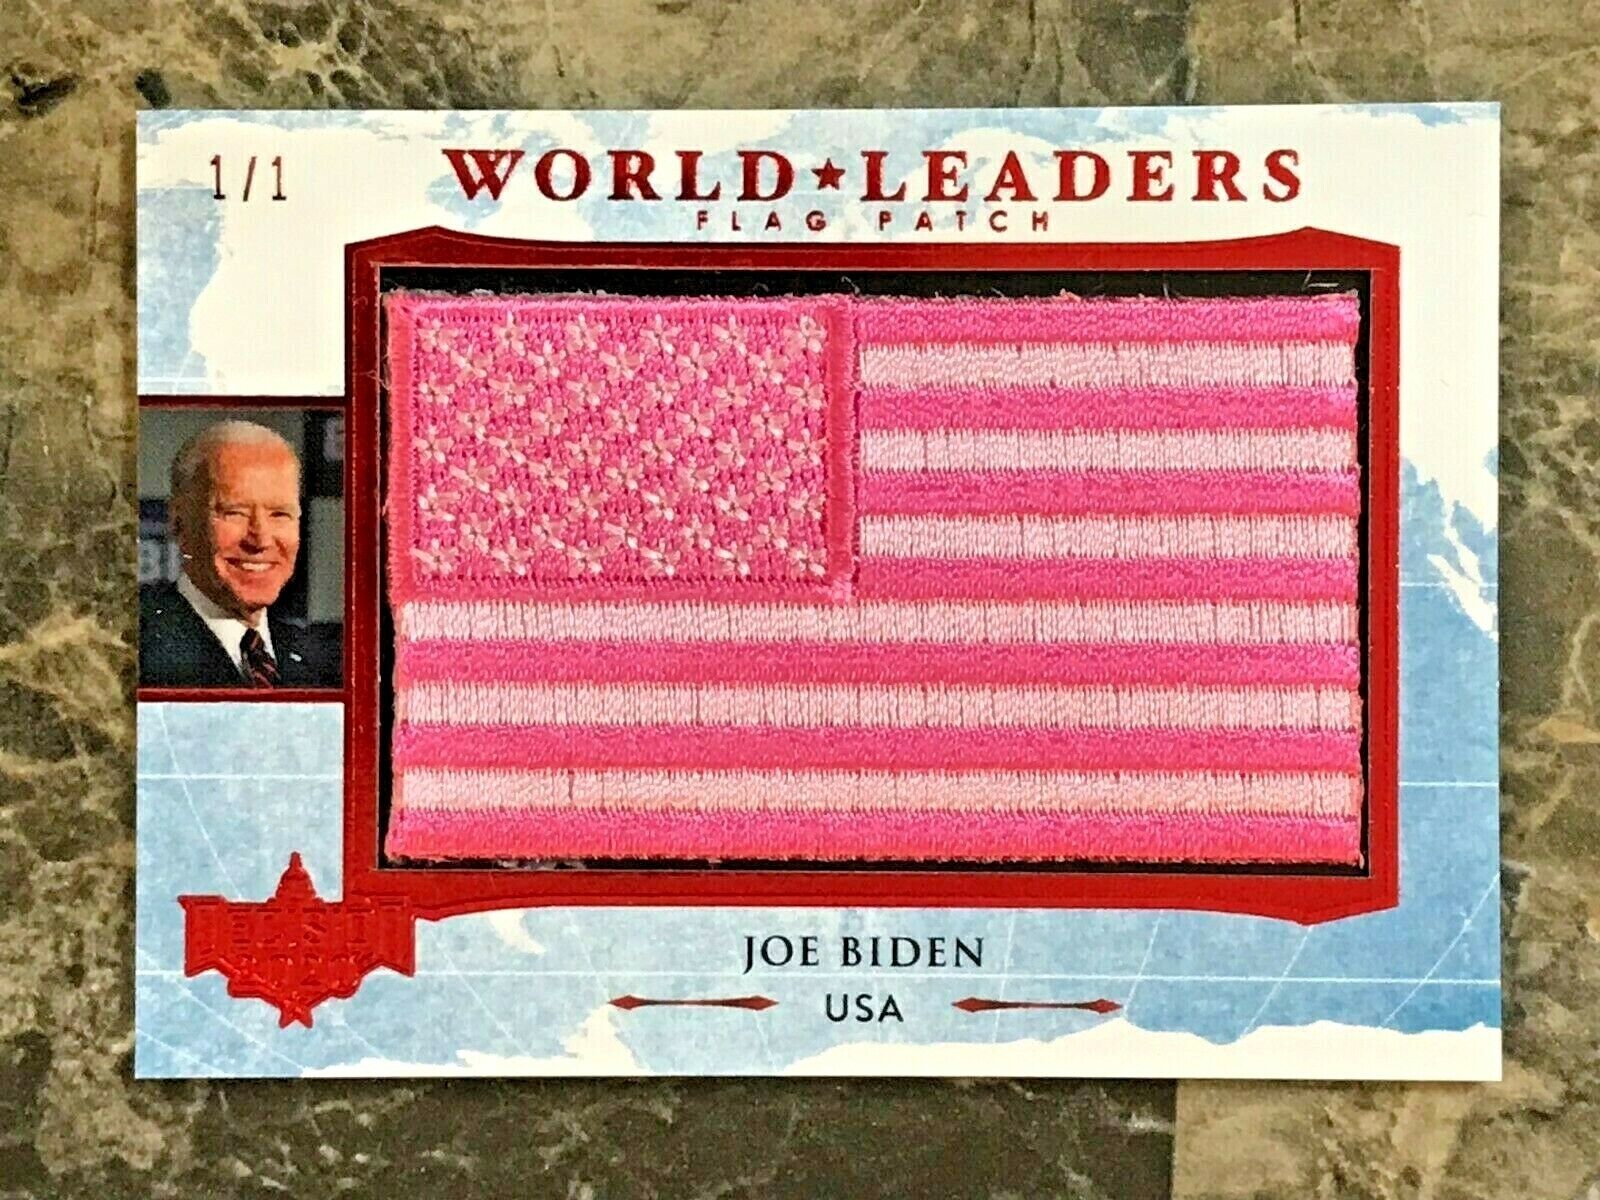 Joe Biden Decision 2020 World Leaders Flag Patch (Pink Variation) #WL99 RED 1/1